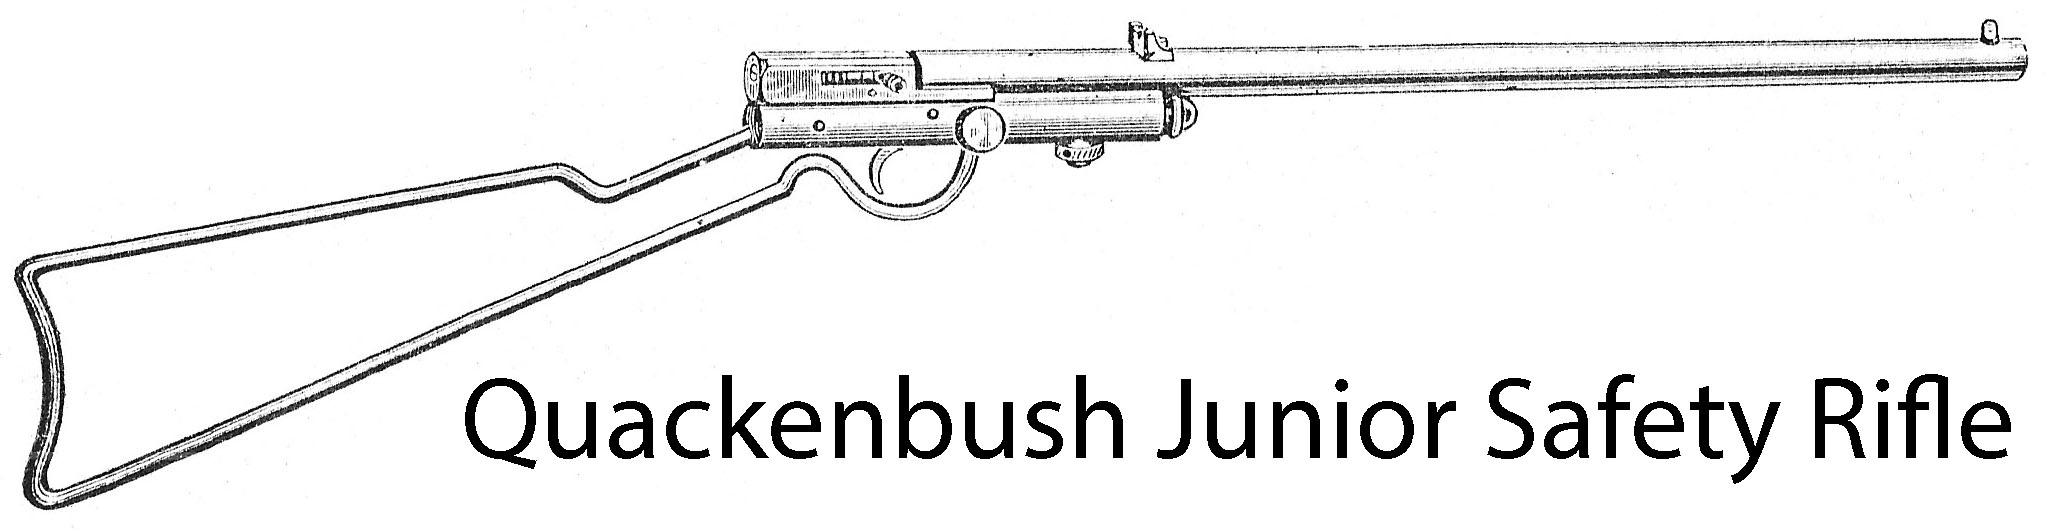 Junior Safety Rifle Schematic